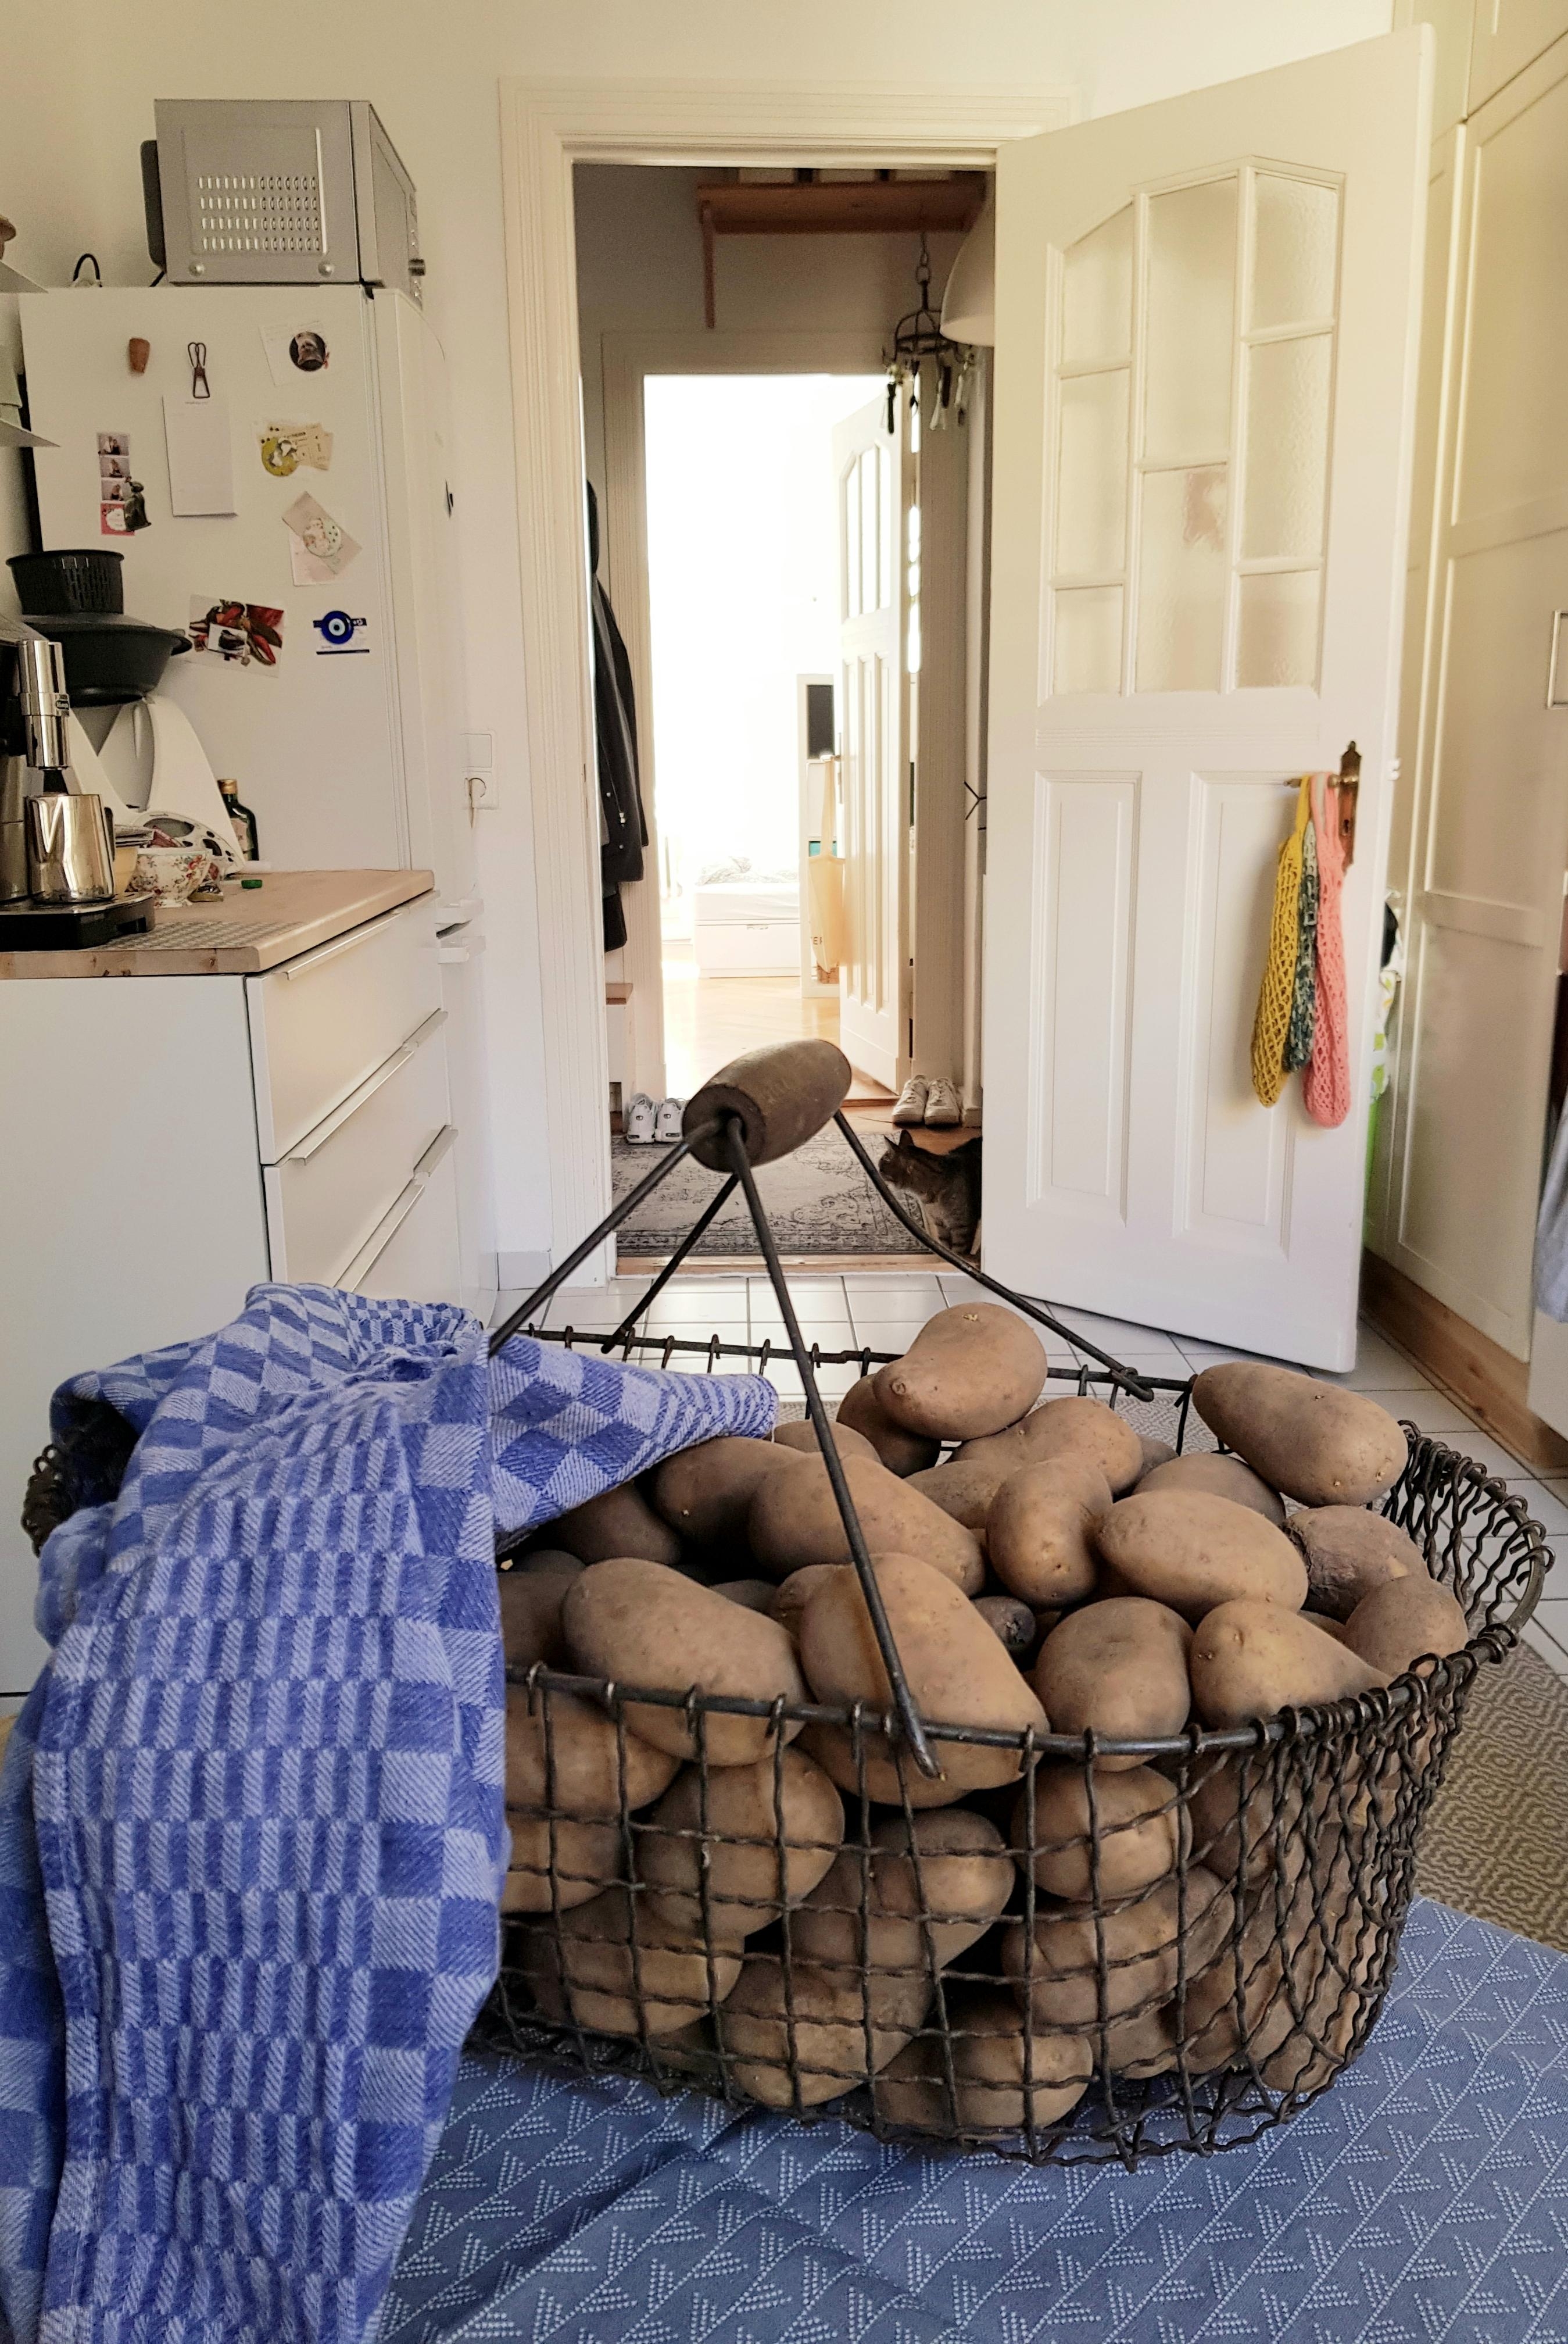  Heidekartoffeln frisch vom Markt ,werden immer #unverpackt gekauft #GreenChallence #küche 